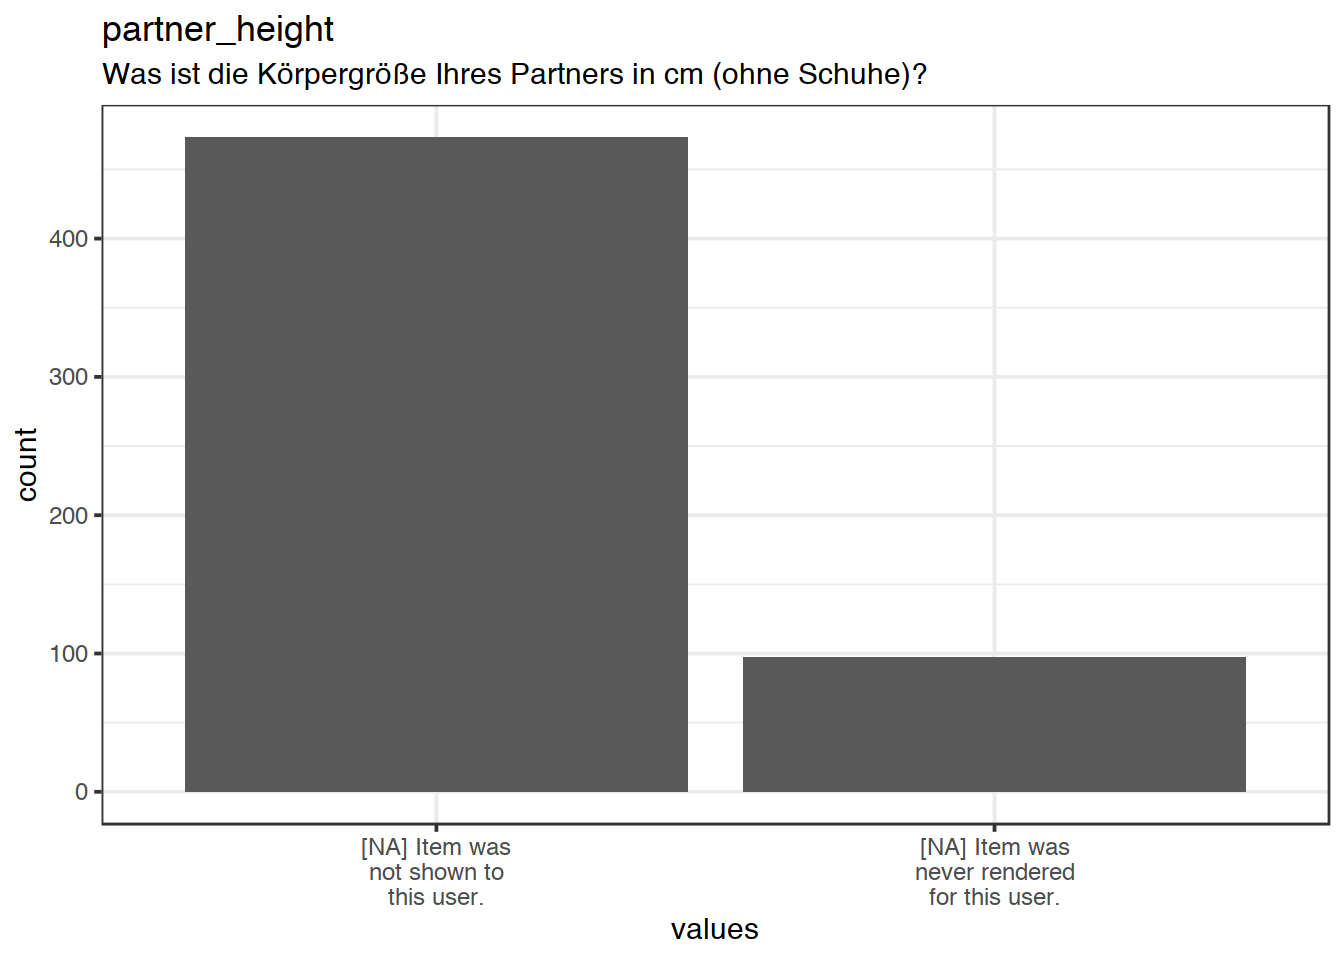 Plot of missing values for partner_height